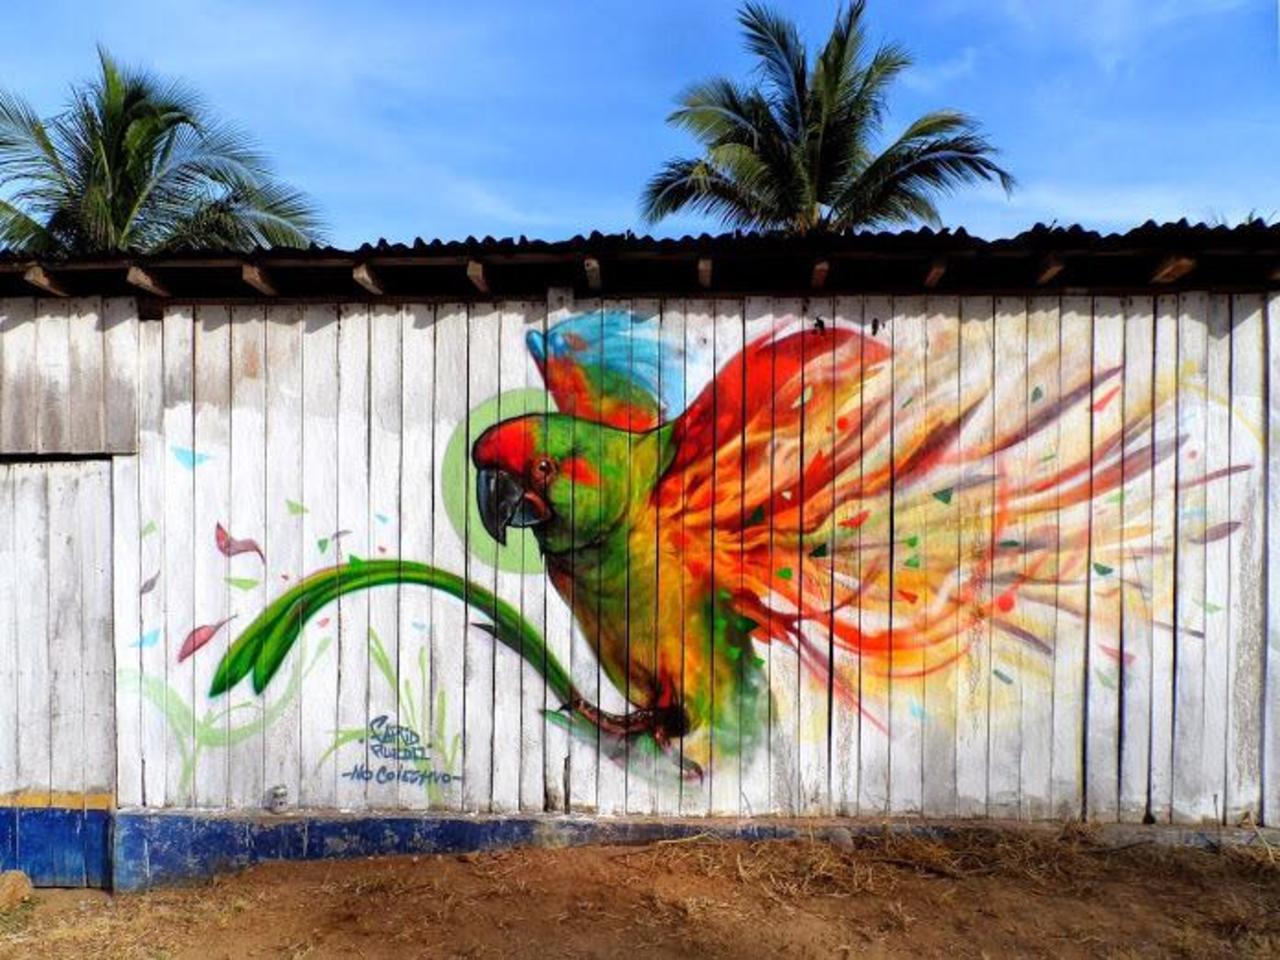 Farid Rueda
Michoacán, Mexico
#streetart #art #graffiti #mural http://t.co/8ojTXFjCU8